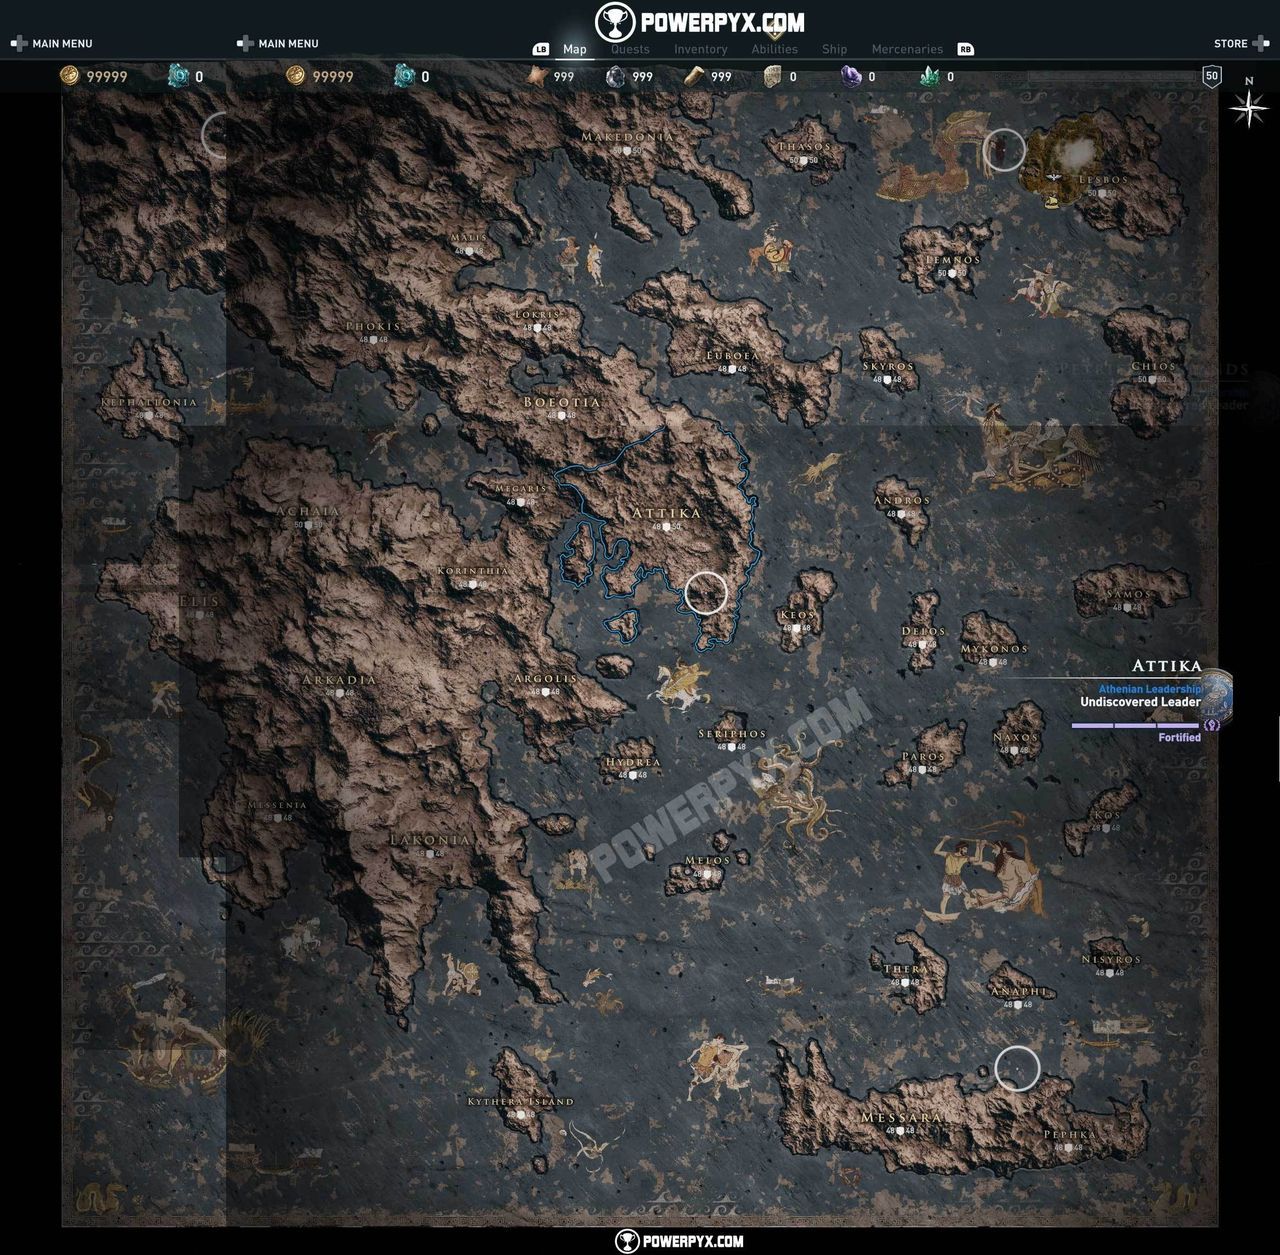 Desvelado El Mapa Completo De Assassin S Creed Odyssey Vandal